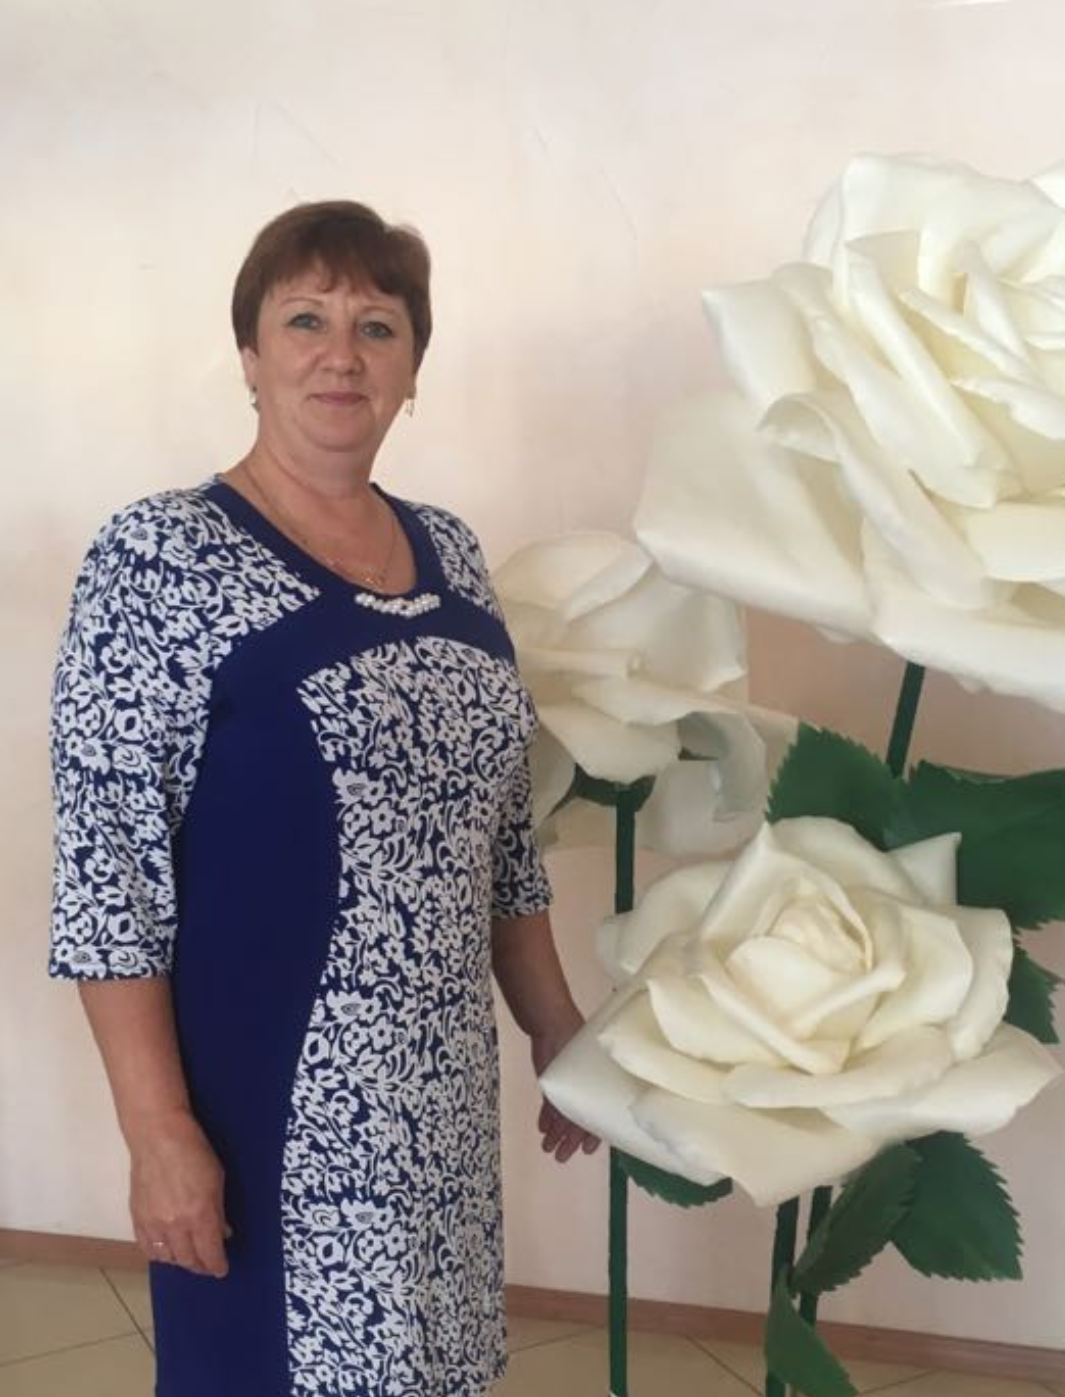 Нашу дорогую жену, маму, бабушку Ирину Васильевну ЗОТОВУ поздравляем 50-летним юбилеем!